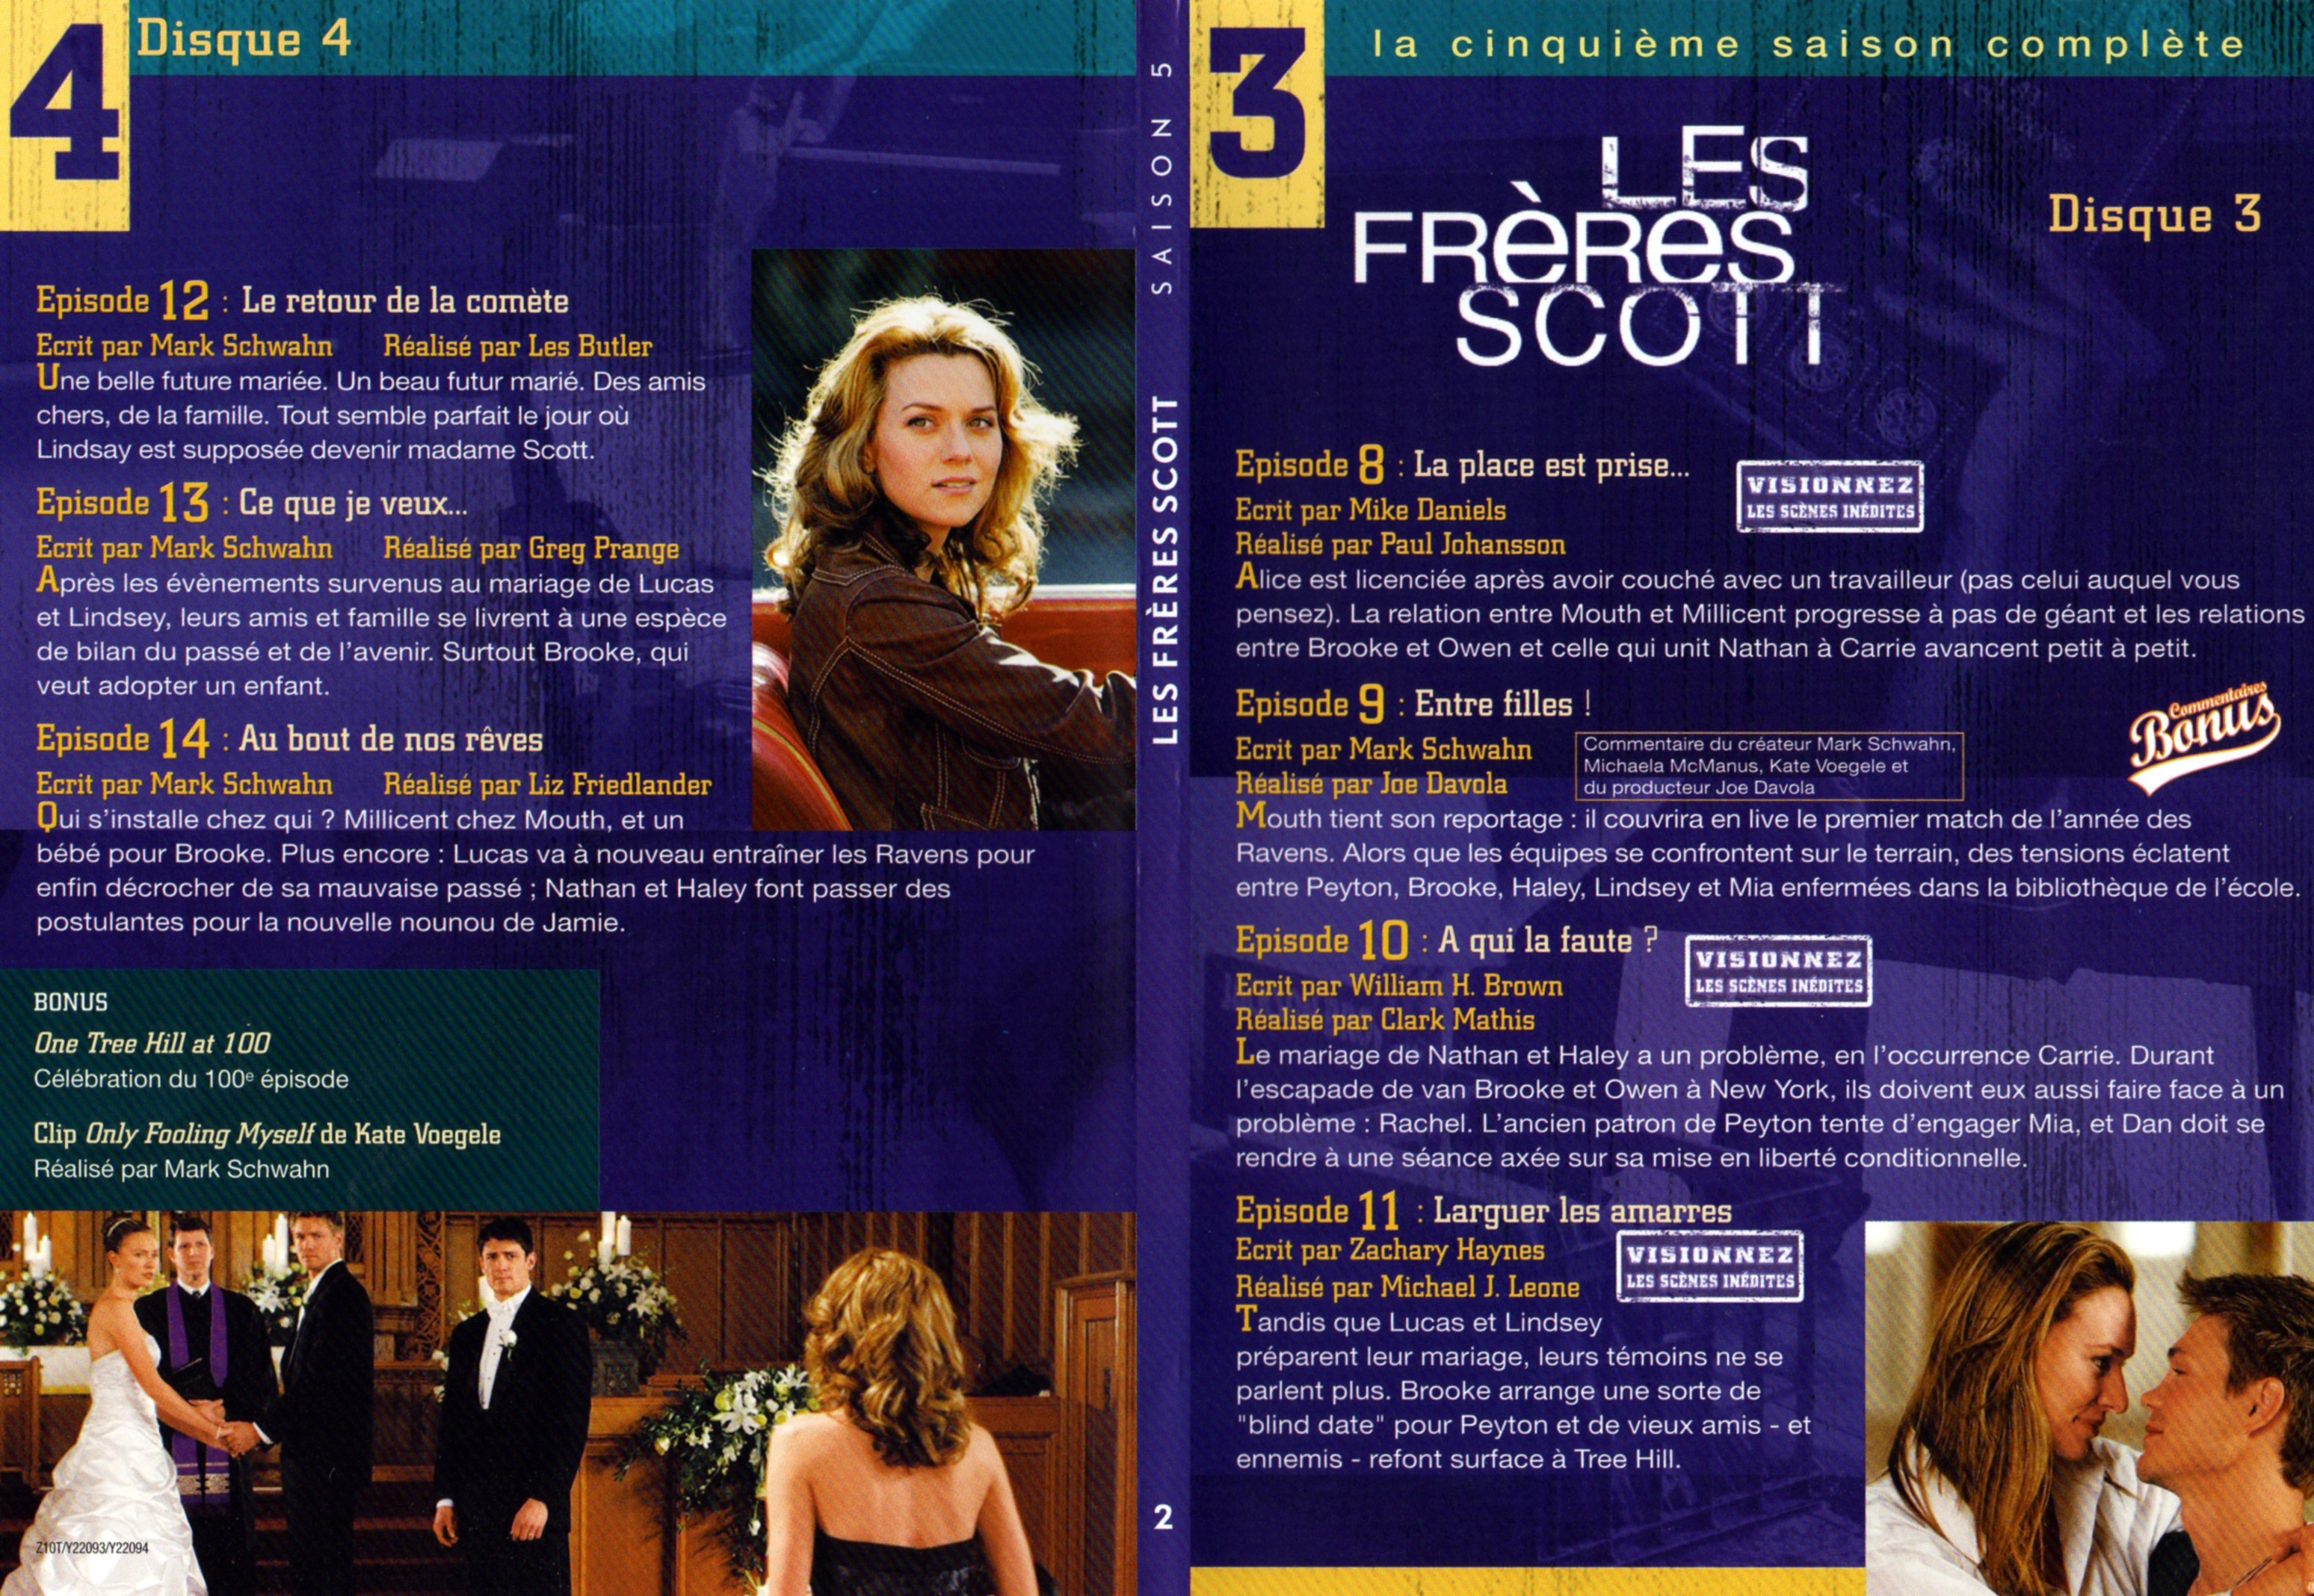 Jaquette DVD Les frres Scott Saison 5 DVD 2